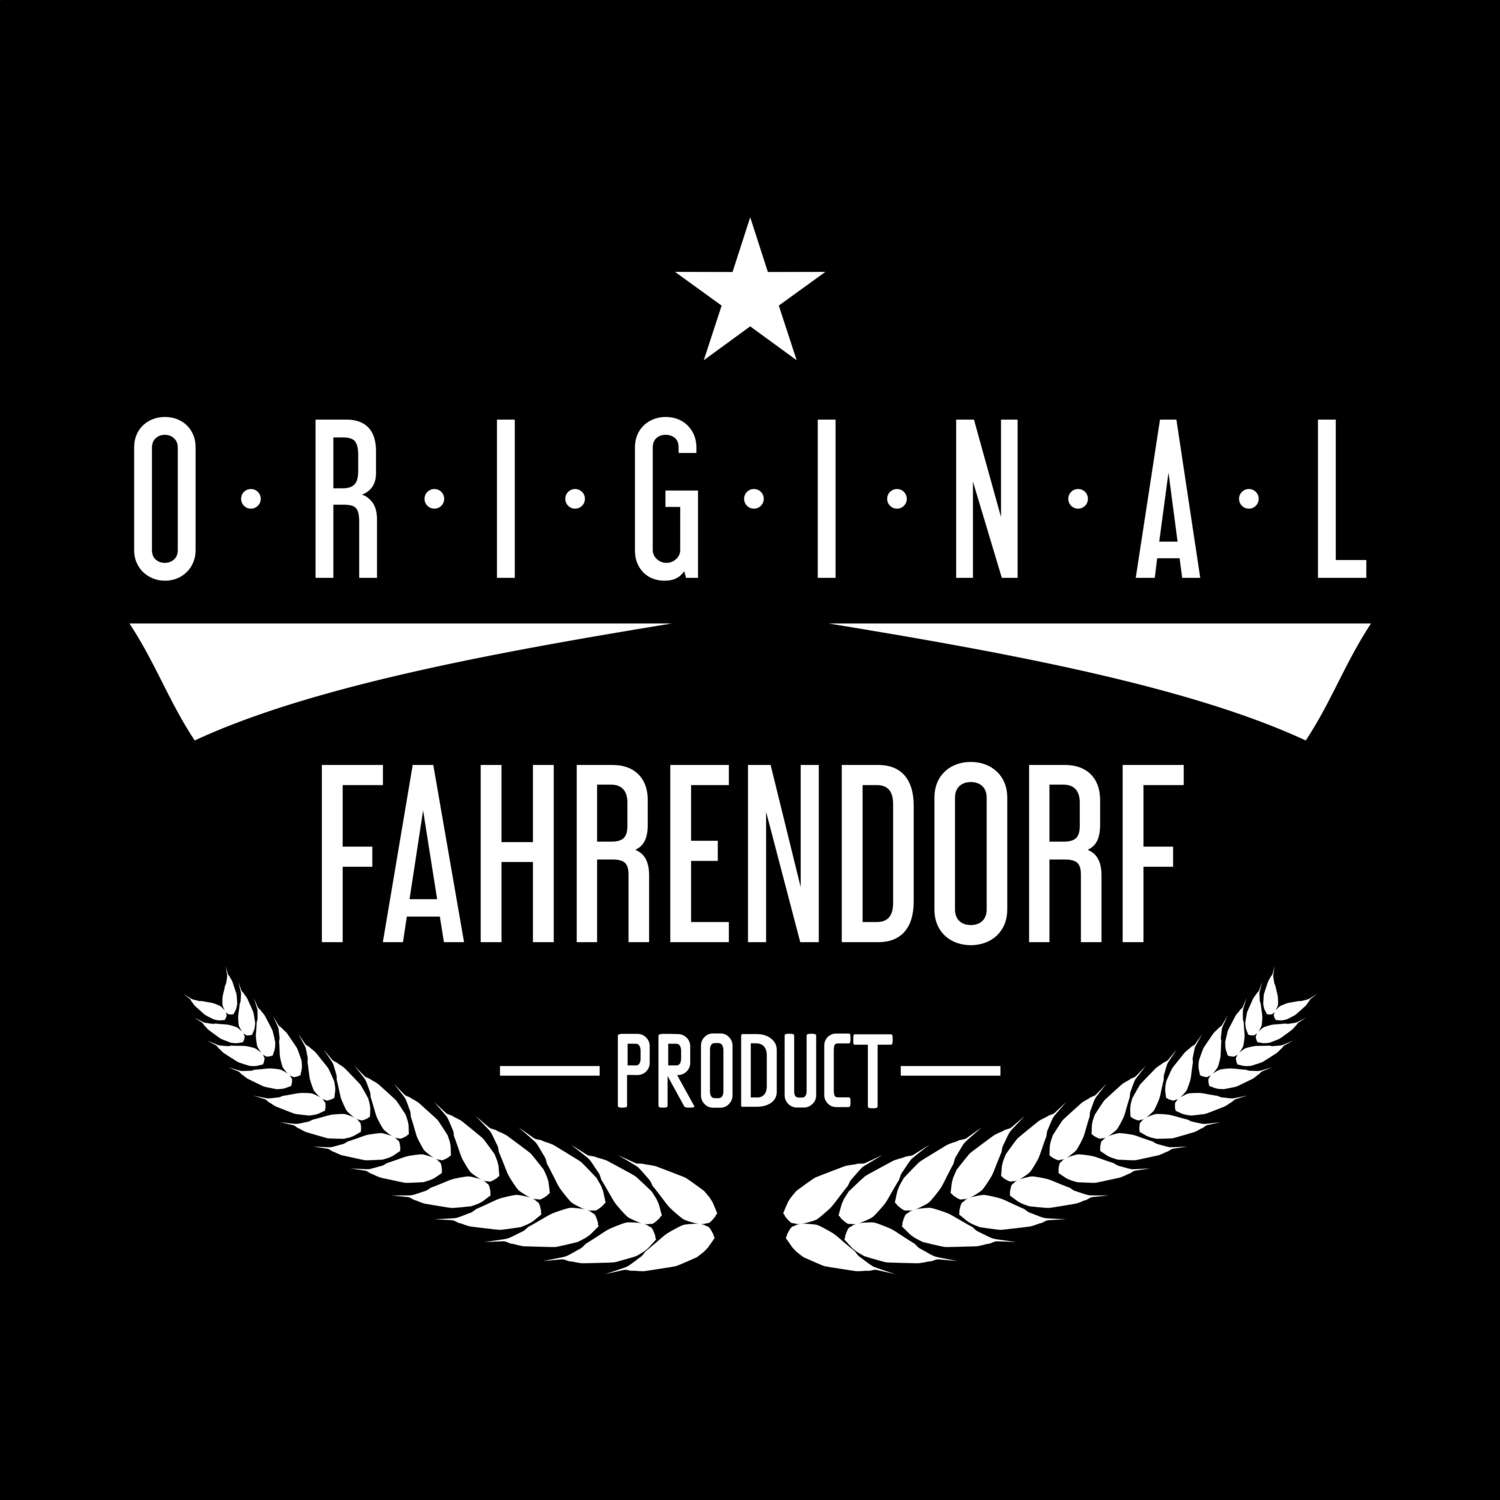 Fahrendorf T-Shirt »Original Product«